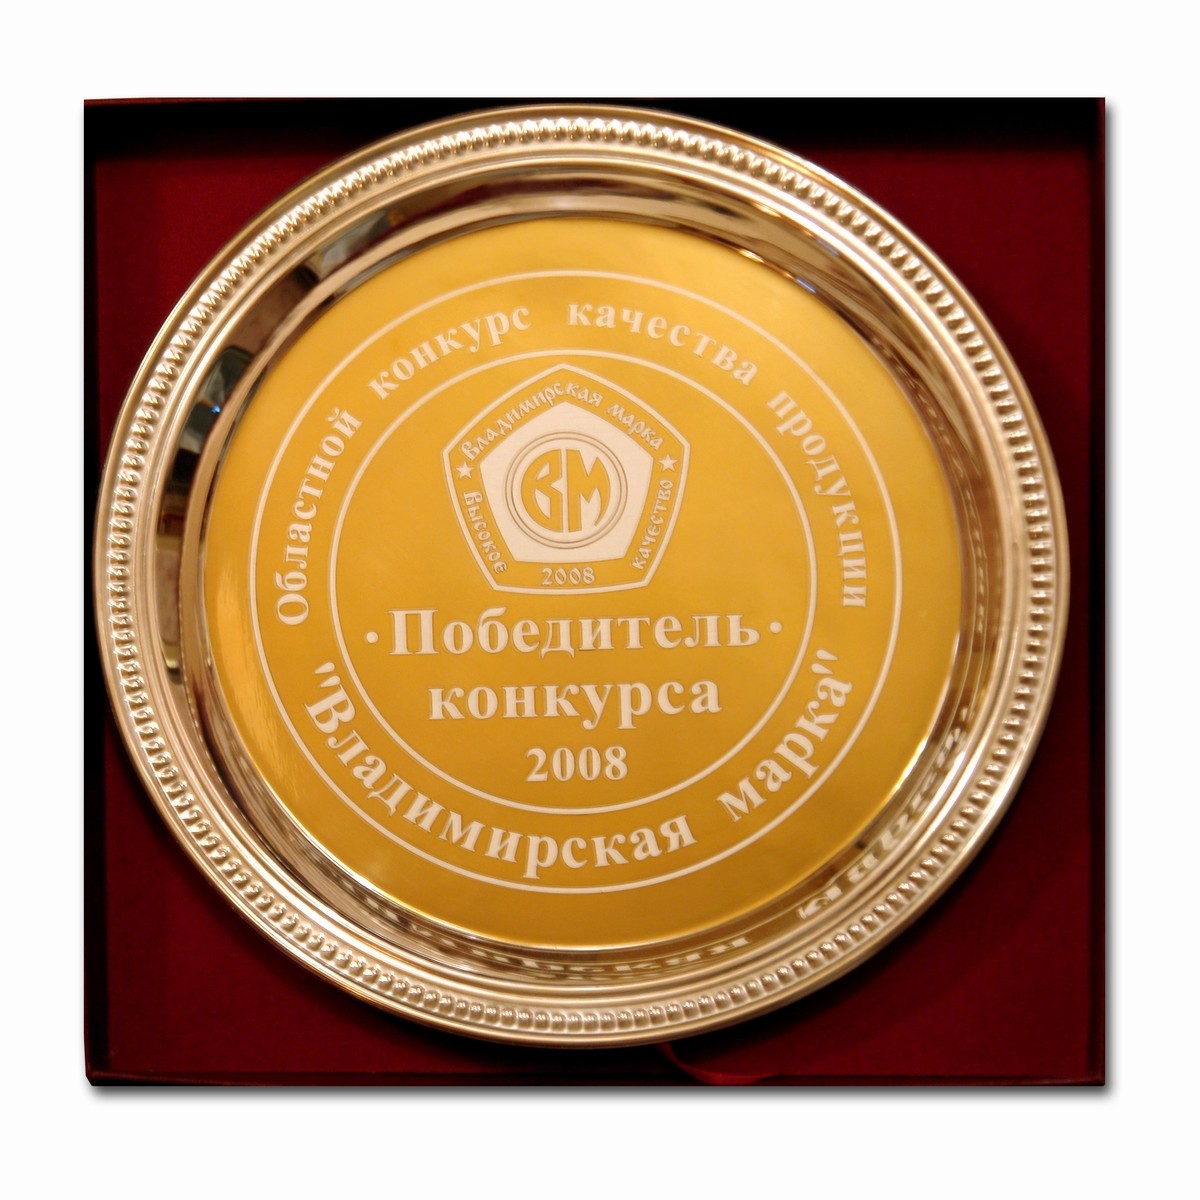 Награда Владимирская марка 2008